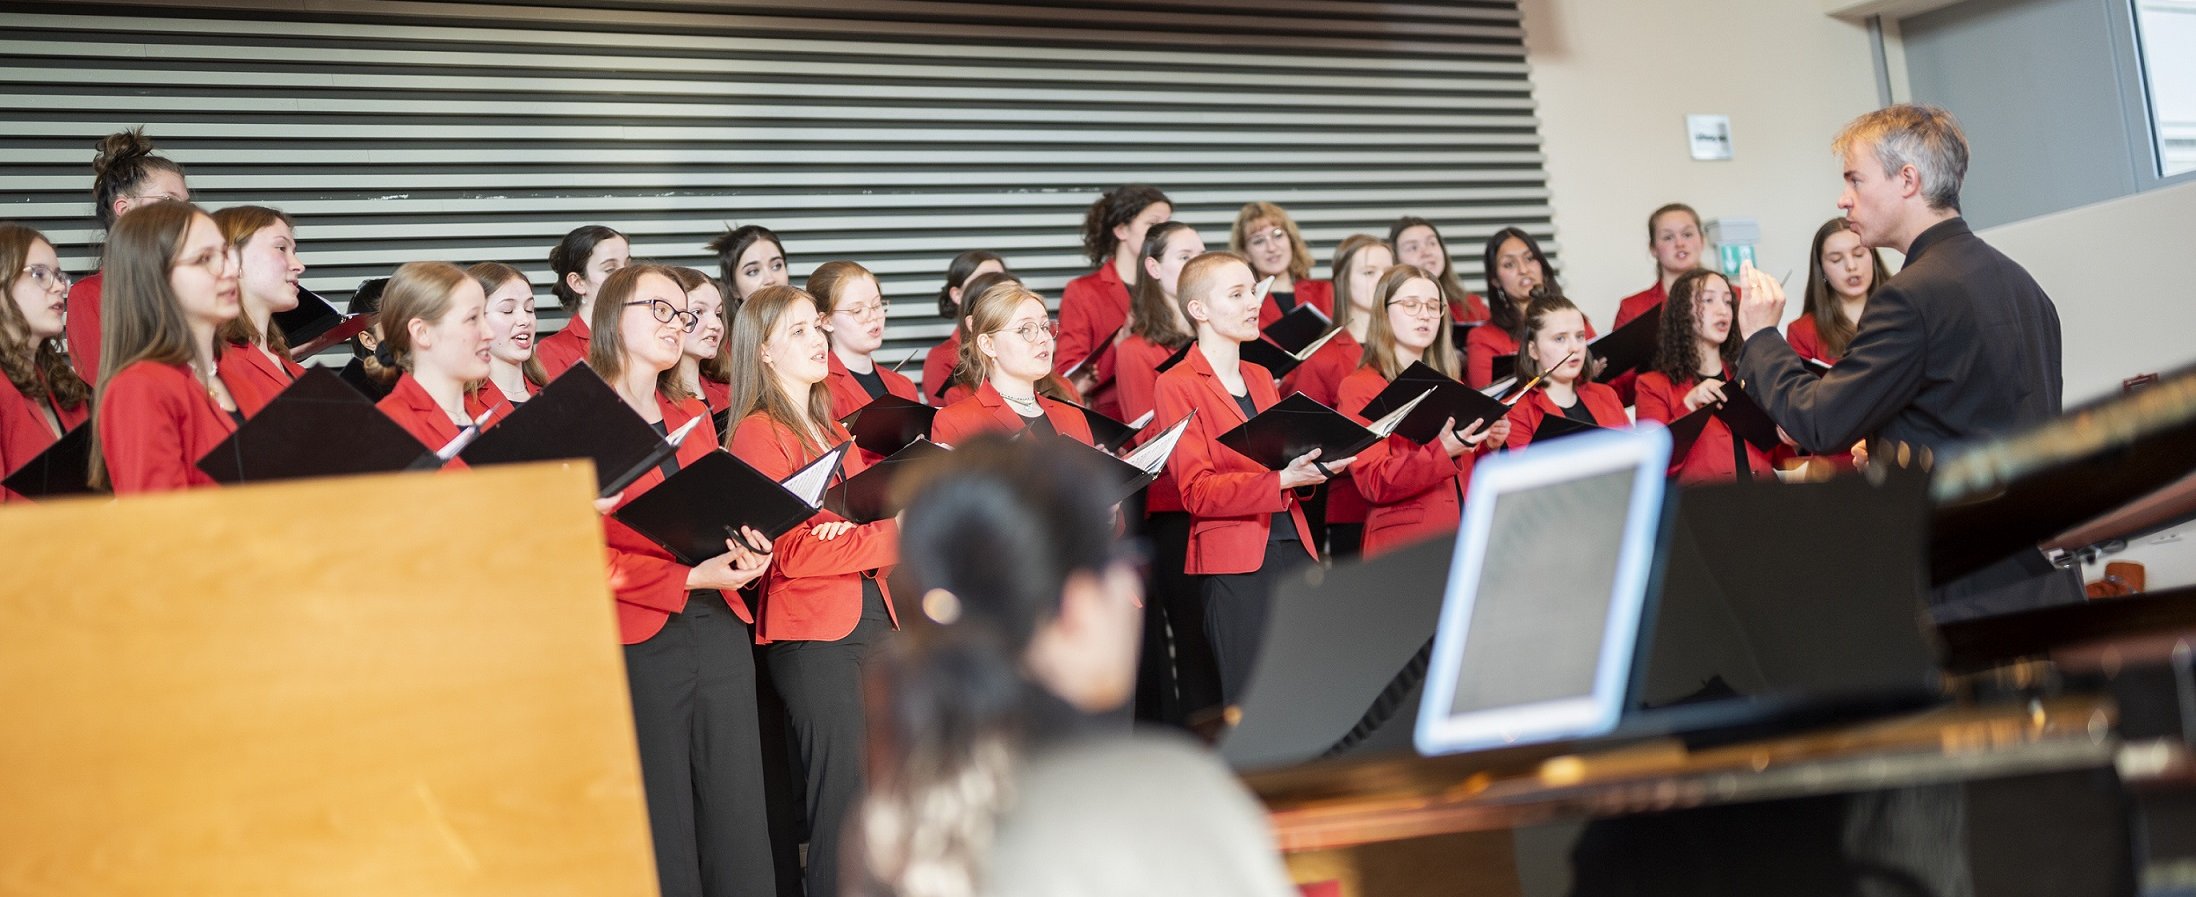 Der Mädchenchor singt im Hörsaal F der MHH. Die jungen Frauen tragen rote Blazer und schwarze Hosen. Vor ihnen steht Leiter des Chors, Professor Felber.